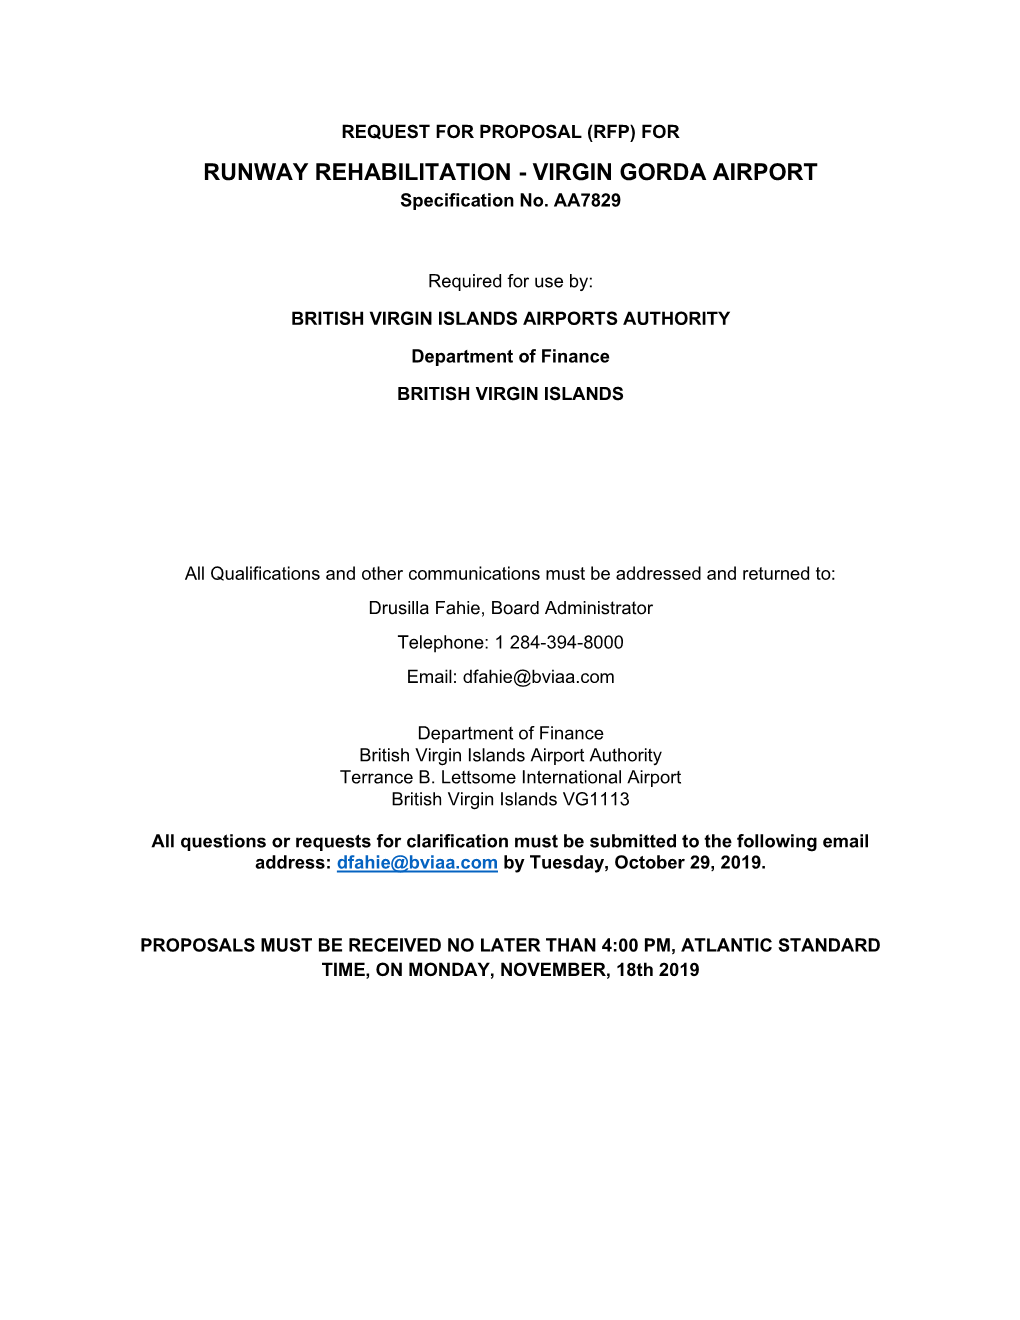 VIRGIN GORDA AIRPORT Specification No